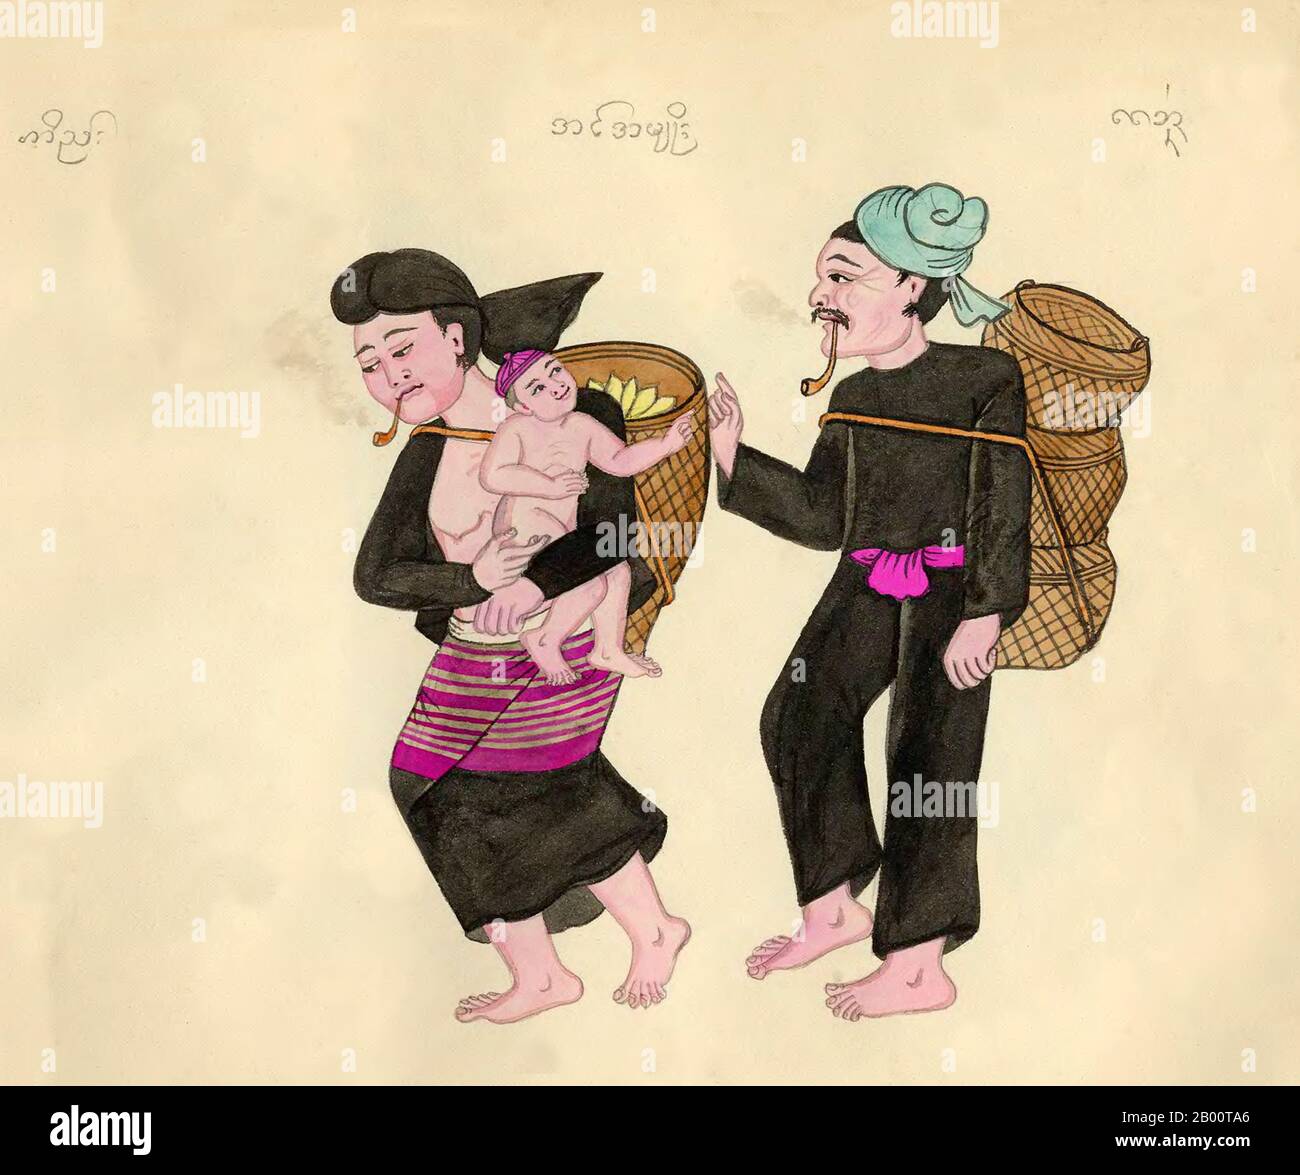 Birmania/Myanmar: Giovane en o Eng coppia con bambino in abito etnico. Il testo Shan li identifica come 'in', mentre il birmano li chiama in Amyo o 'in Tribe'. Un acquerello disegnato a mano e colorato della fine del XIX secolo da un artista birmano sconosciuto. Il nome del gruppo etnico in primo piano appare nella parte superiore dell'immagine in Shan script (a sinistra), Burmese script (Centro) e Khun script (a destra). Lo script Khun è stato precedentemente utilizzato in Kengtung/Kyaingtong nello stato orientale dello Shan e in LAN Na o Lanna, nel nord della Thailandia. Foto Stock